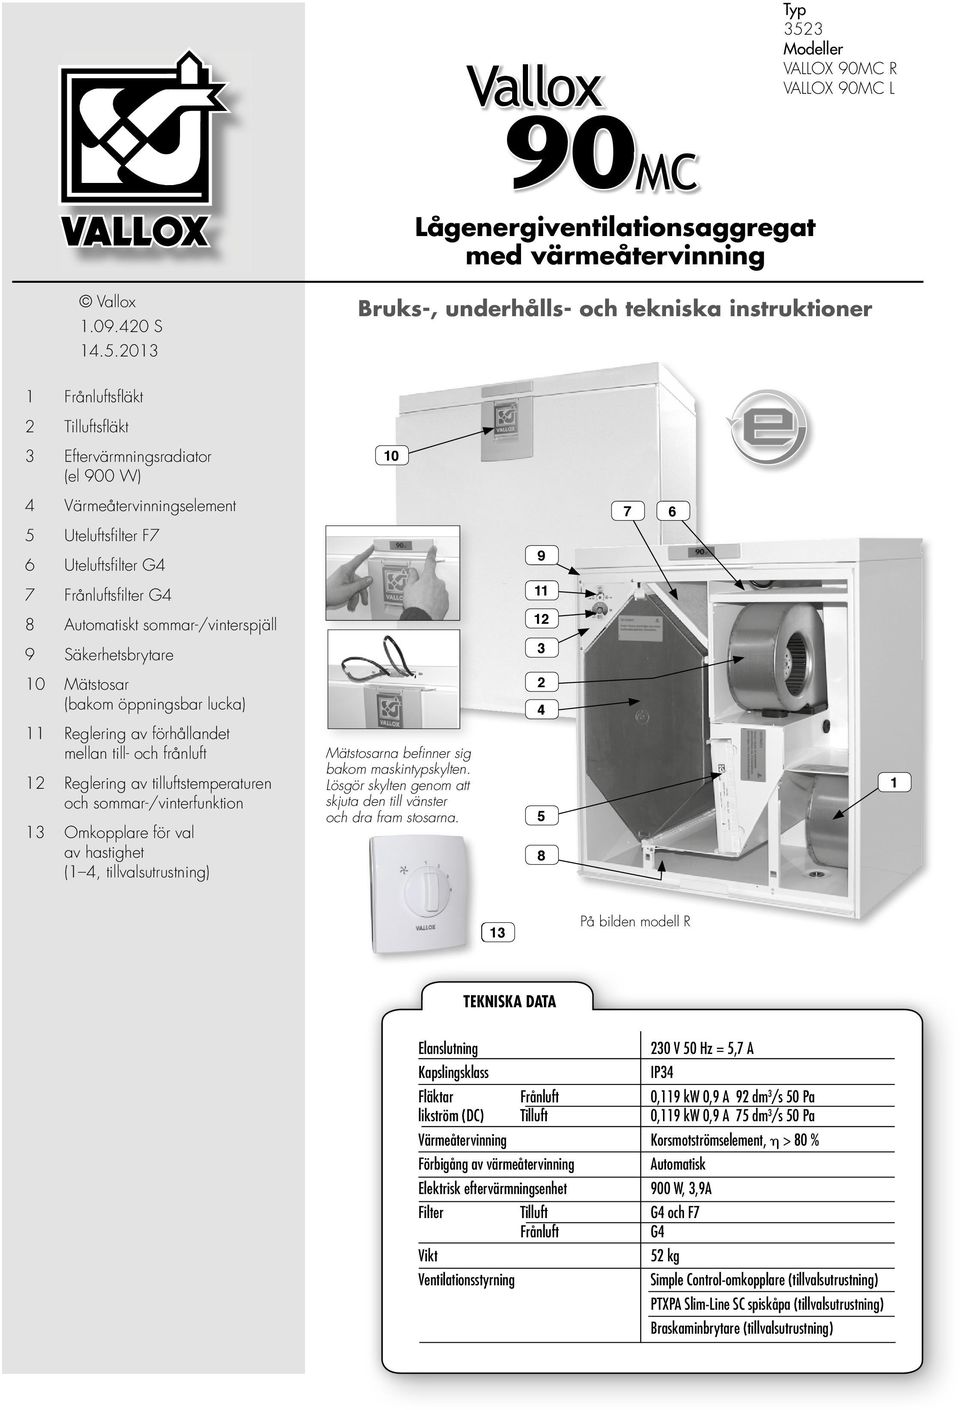 2013 Bruks-, underhålls- och tekniska instruktioner 1 Frånluftsfl äkt 2 Tilluftsfl äkt 3 Eftervärmningsradiator (el 900 W) 10 4 Värmeåtervinningselement 7 6 5 Uteluftsfi lter F7 6 Uteluftsfi lter G4